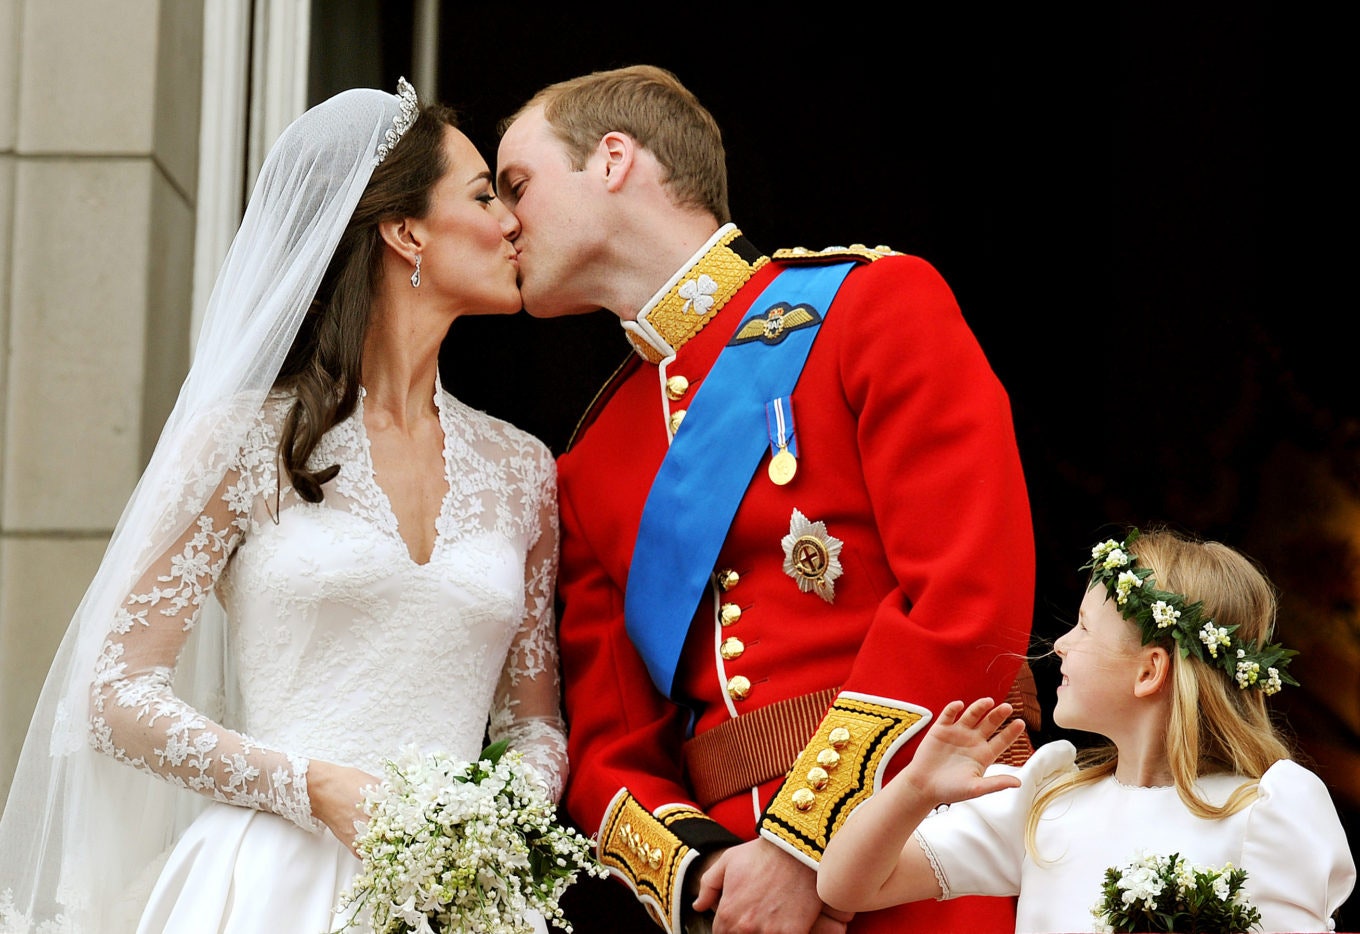 Новые факты о свадьбе принца Уильяма и Кейт Миддлтон